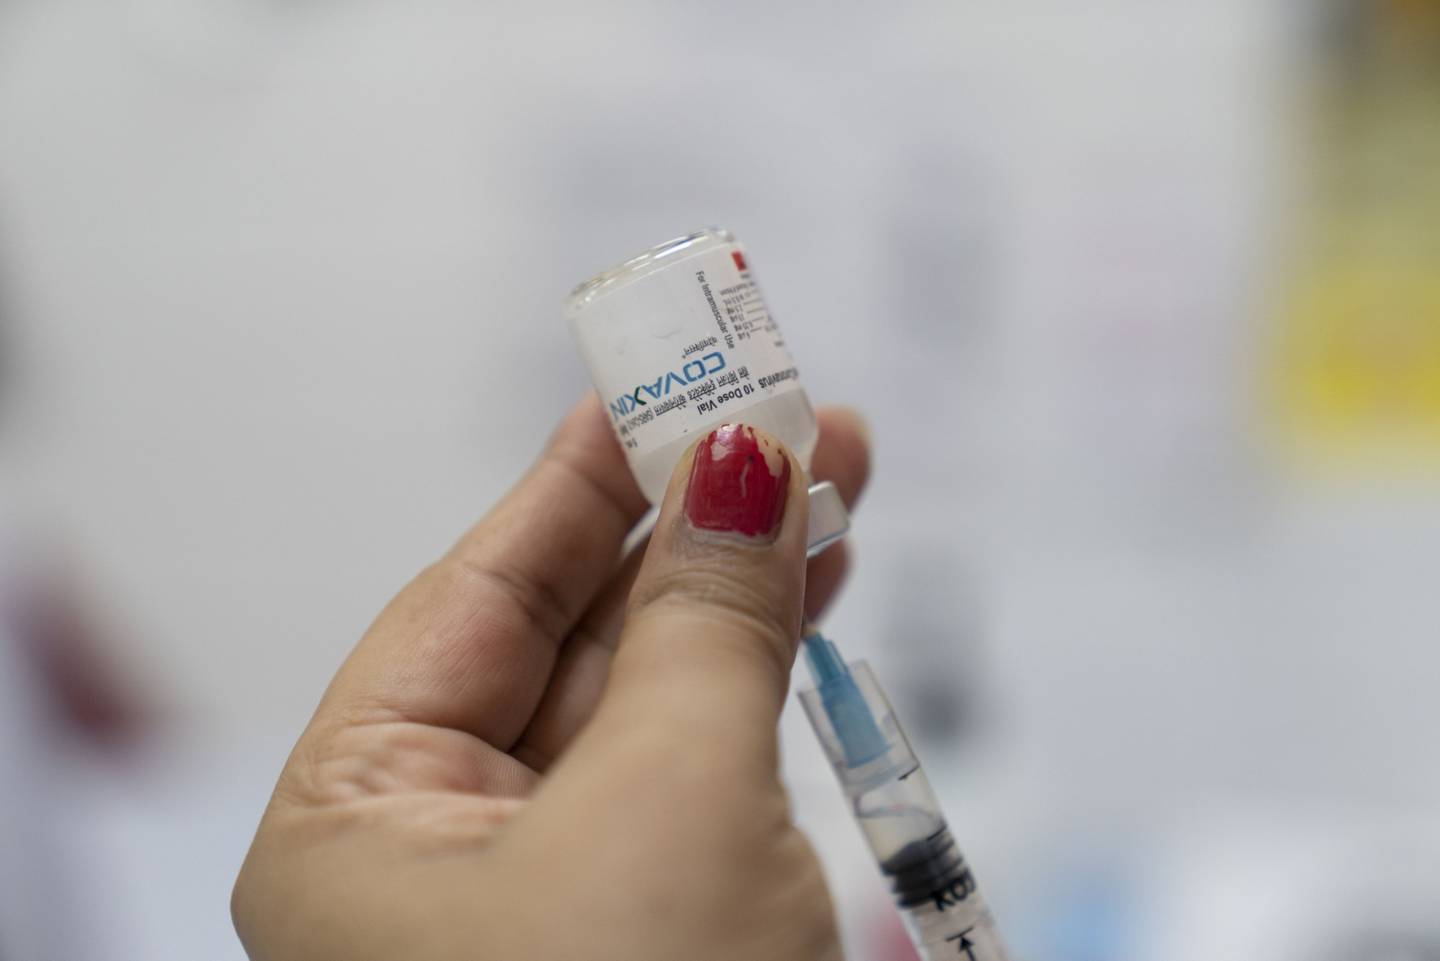 Un trabajador de salud prepara una dosis de la vacuna Covaxin de Bharat Biotech Ltd. Covaxin en un centro de vacunación de Covid-19 instalado en el Delhi Municipal Corp. Public Health Center en la zona de Daryagunj de Nueva Delhi, India, el lunes 21 de junio de 2021.